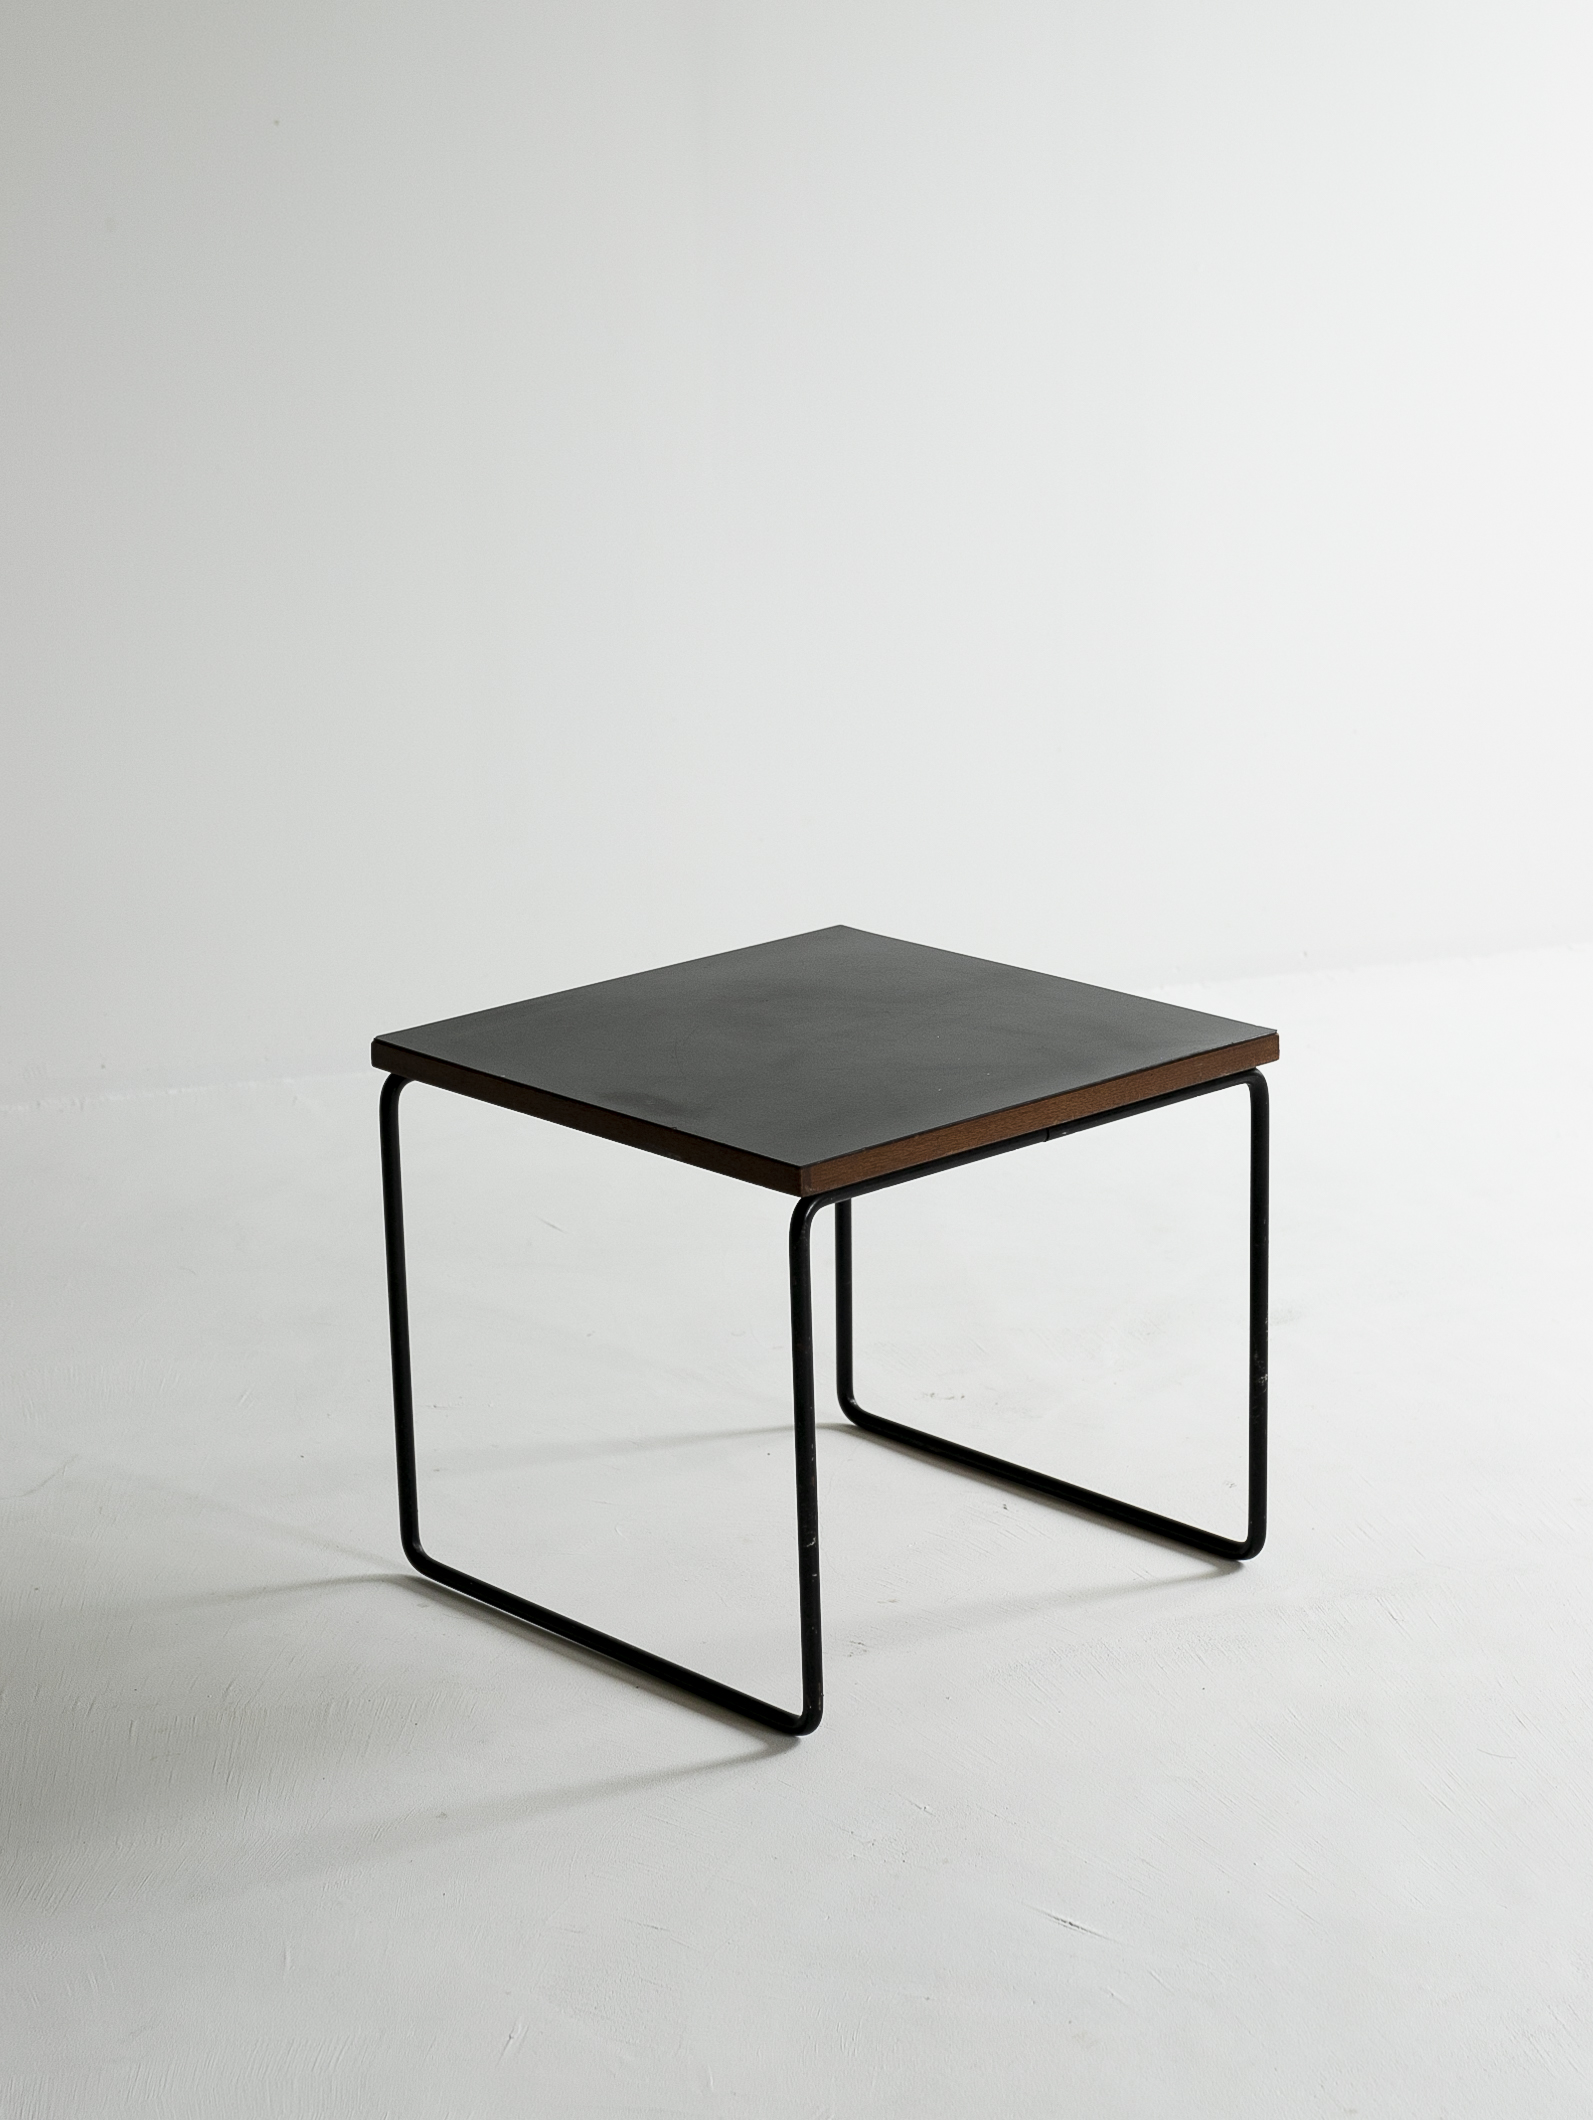 Pierre Guariche ”VOLANTE” Table for Steiner, 1950s